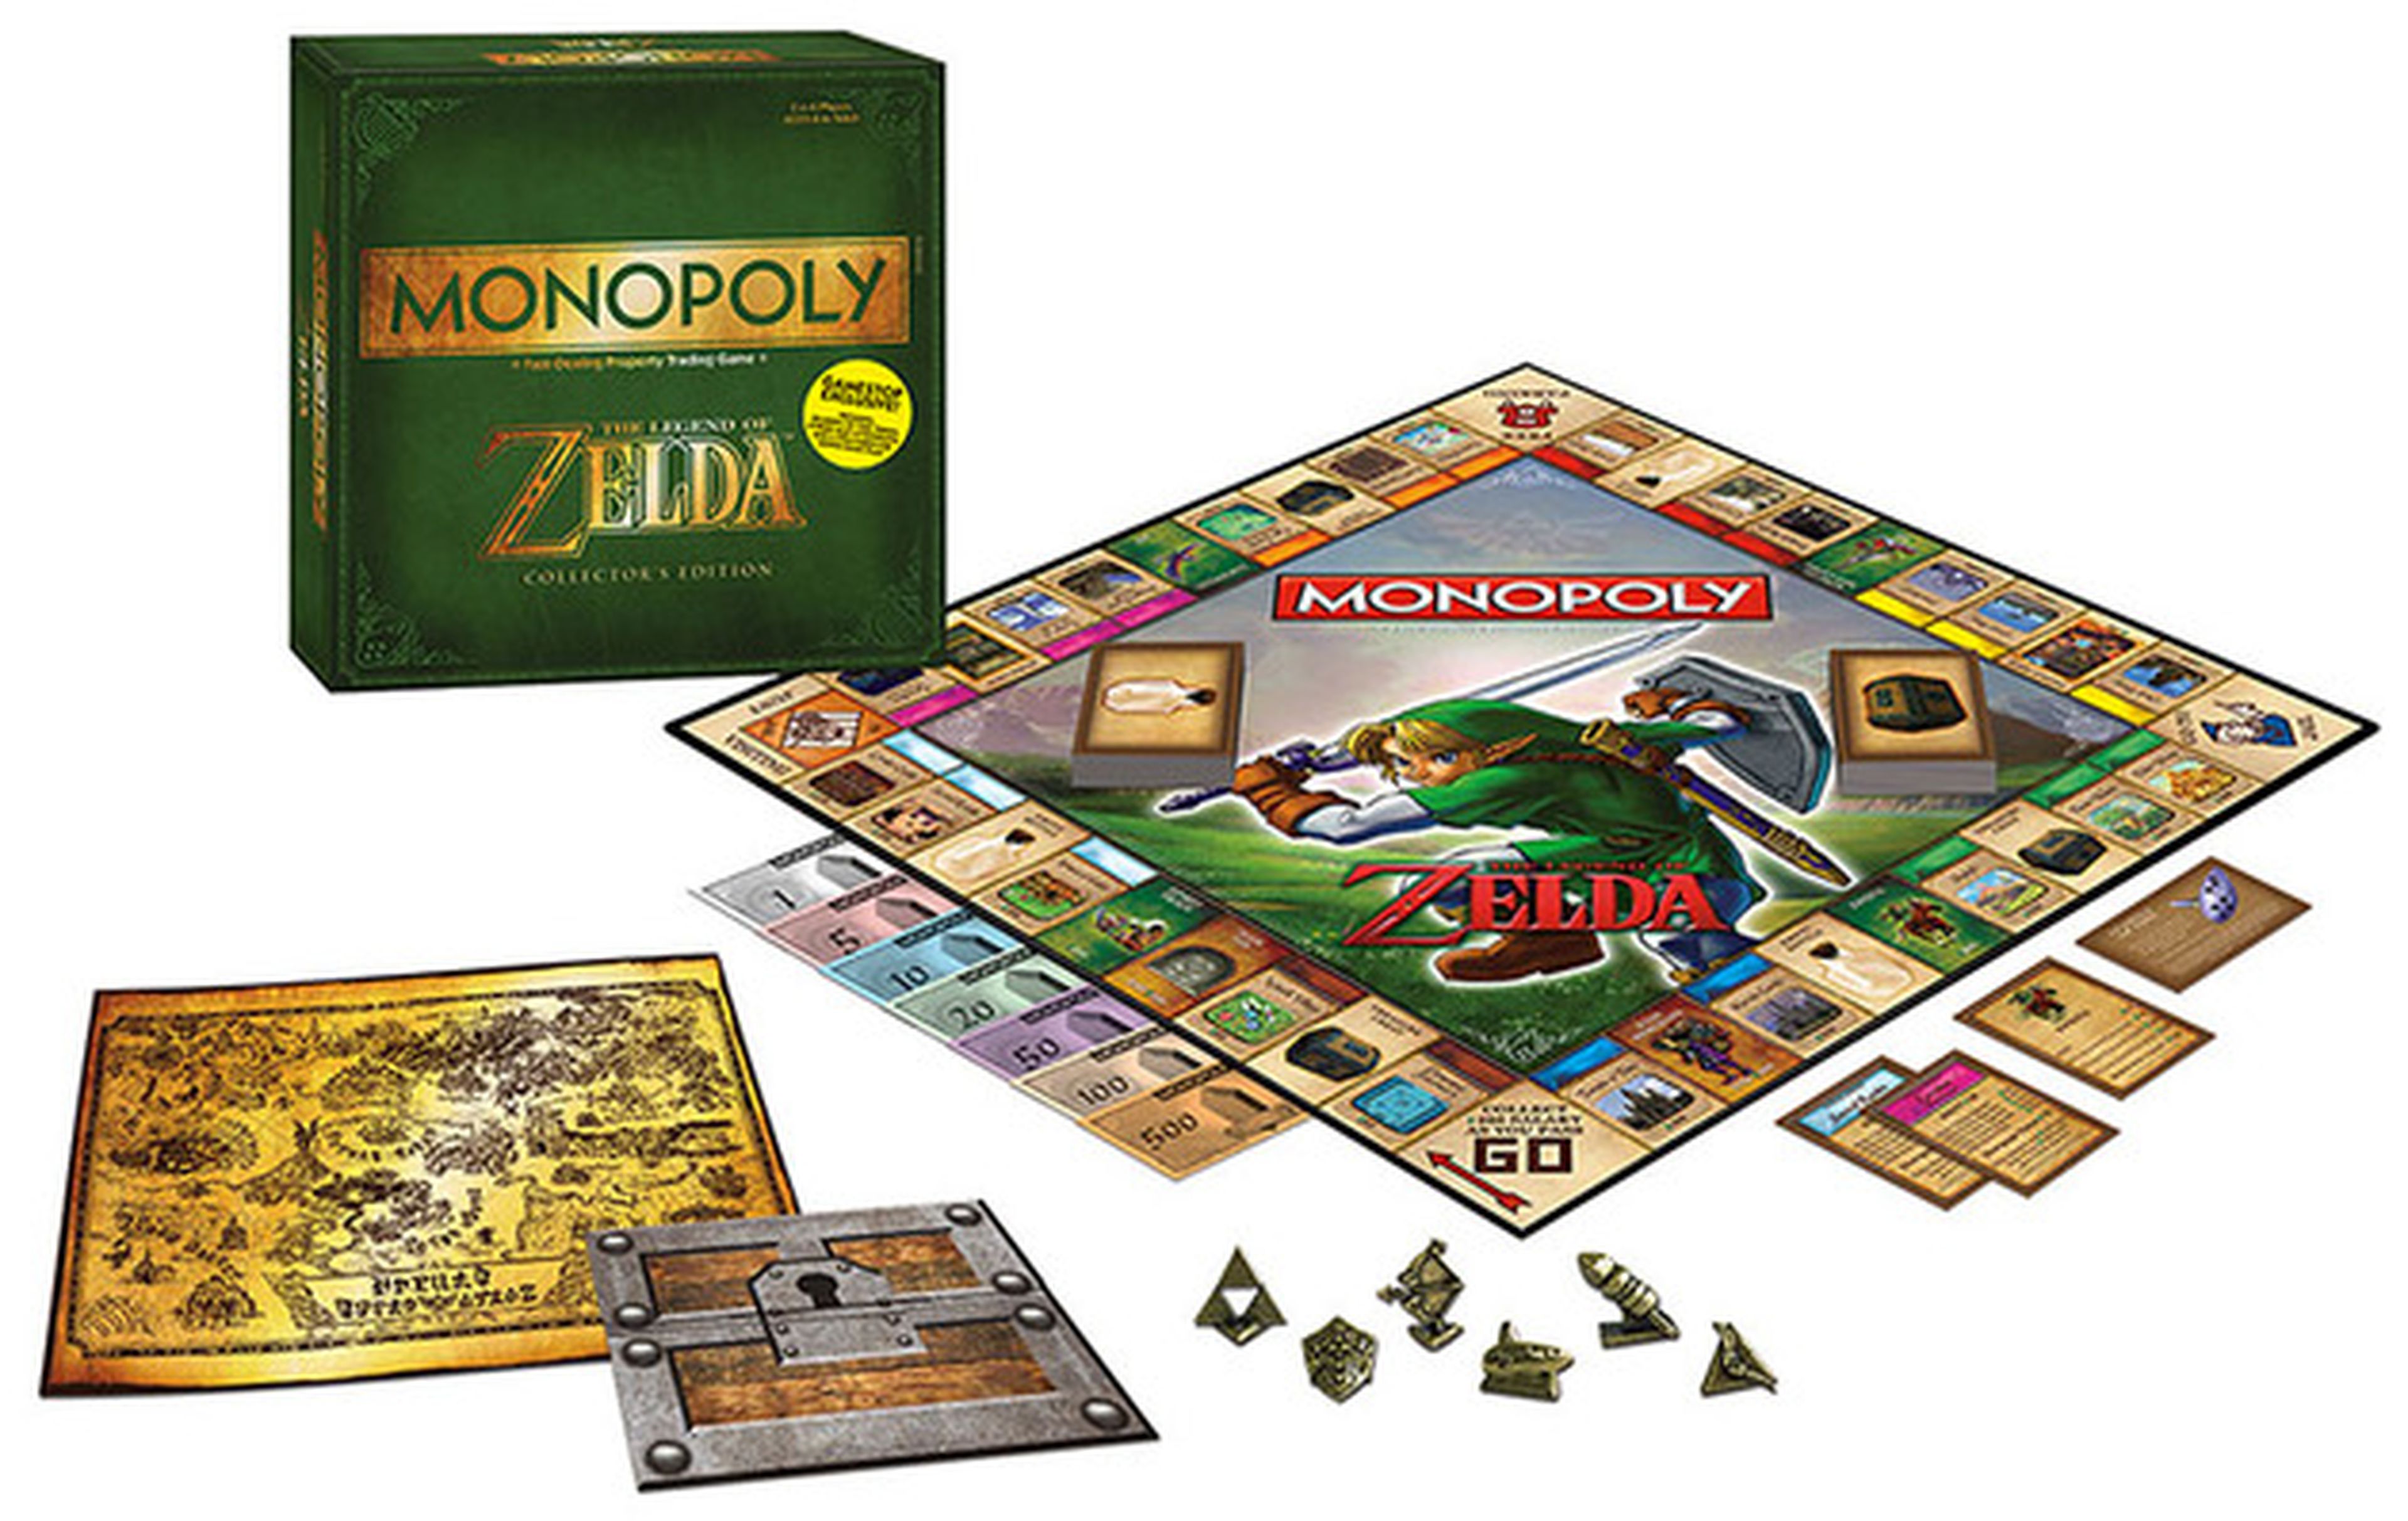 Llega el Monopoly definitivo basado en The Legend of Zelda